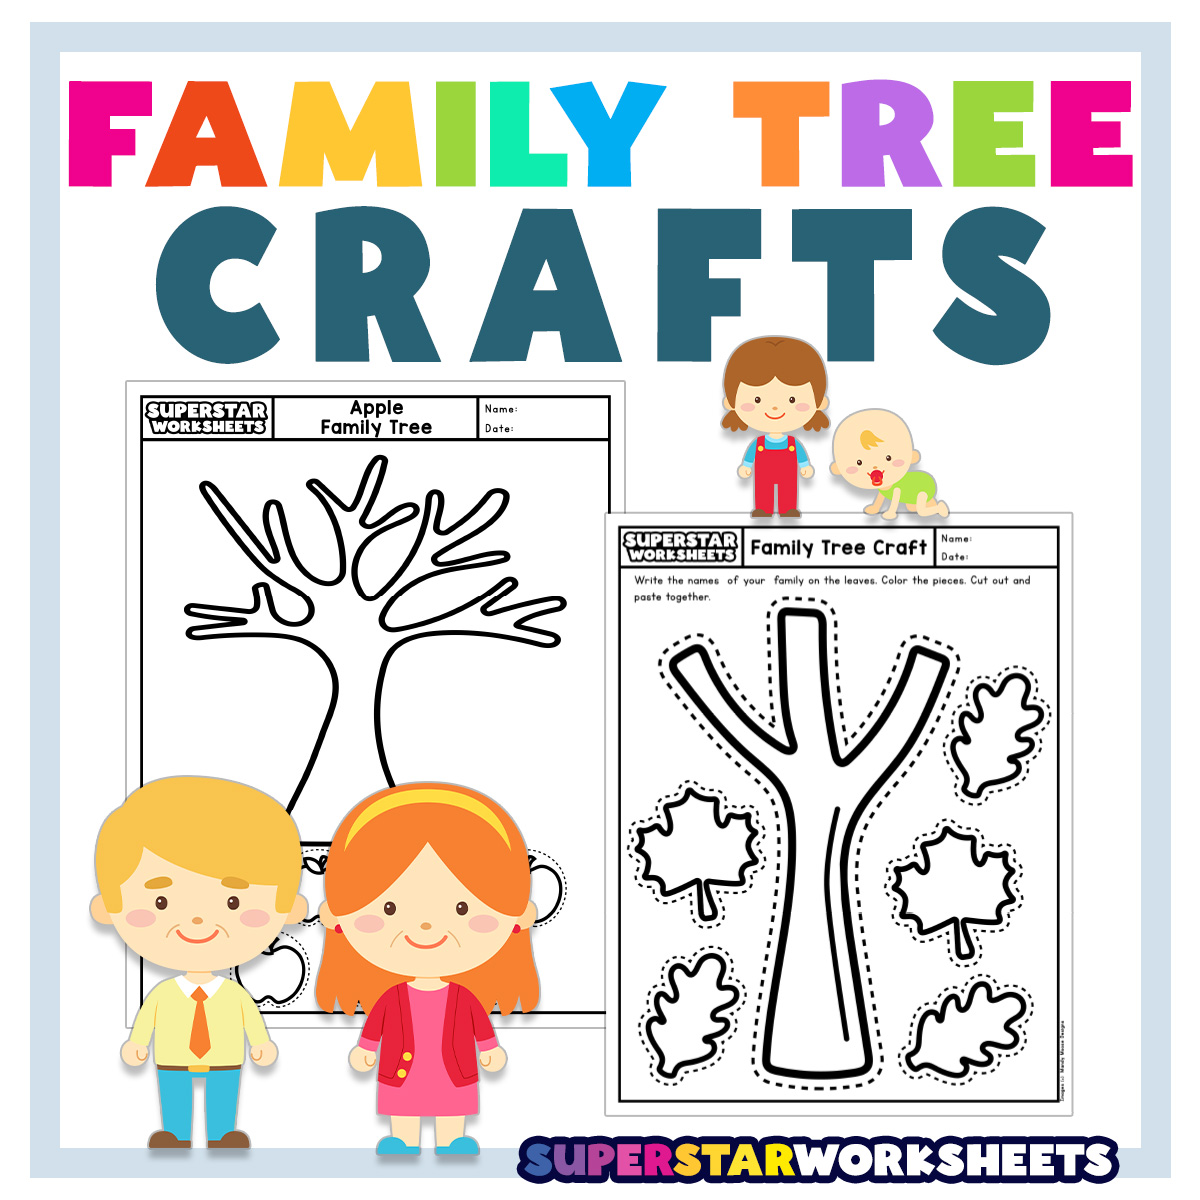 family members worksheets for kindergarten